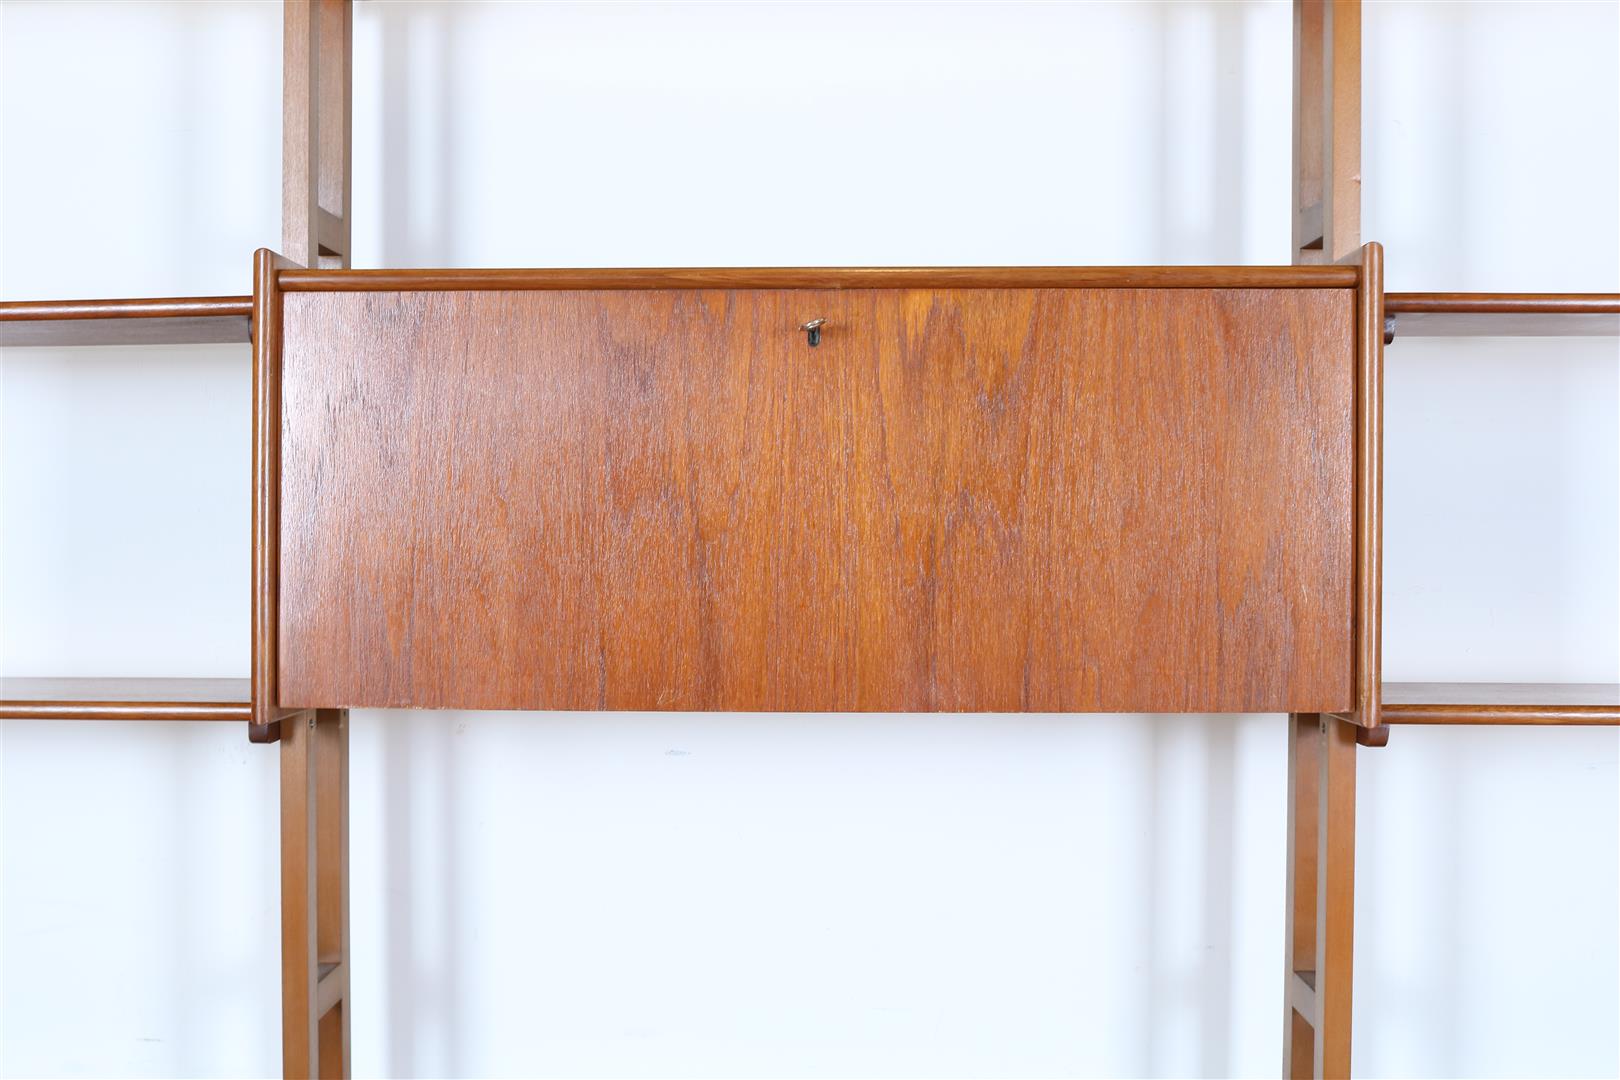 Teak vintage open bookcase with flap door, Denmark 1960s, 189 x 280 x 35 cm. - Image 2 of 4